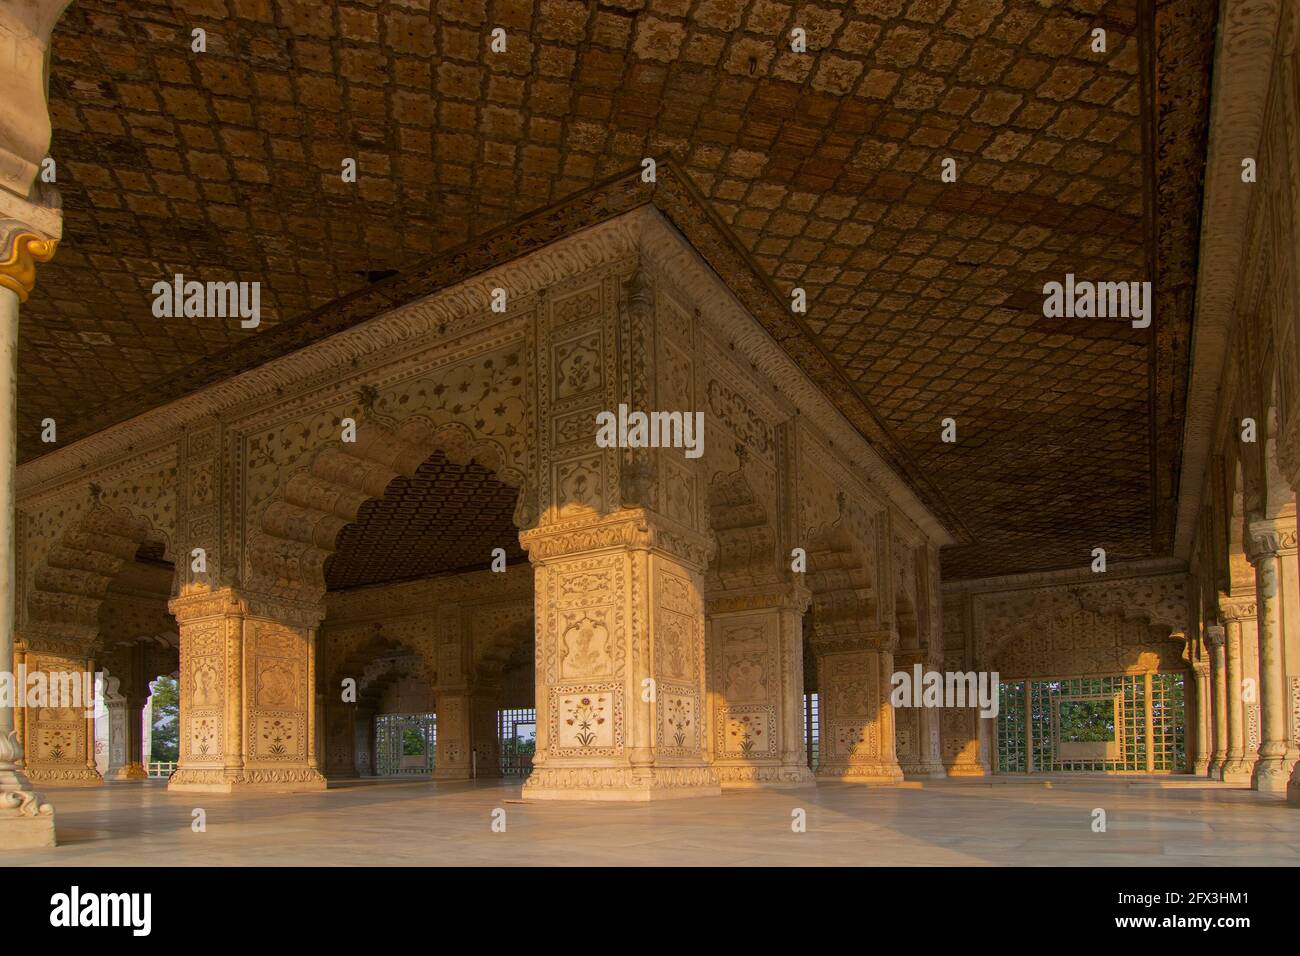 NEU DELHI, INDIEN - 28. OKTOBER 2018 : Mogul-Architektur in Red Fort, einem historischen Fort in Delhi, Indien. Mogulherrscher lebten hier. UNESCO World Herita Stockfoto